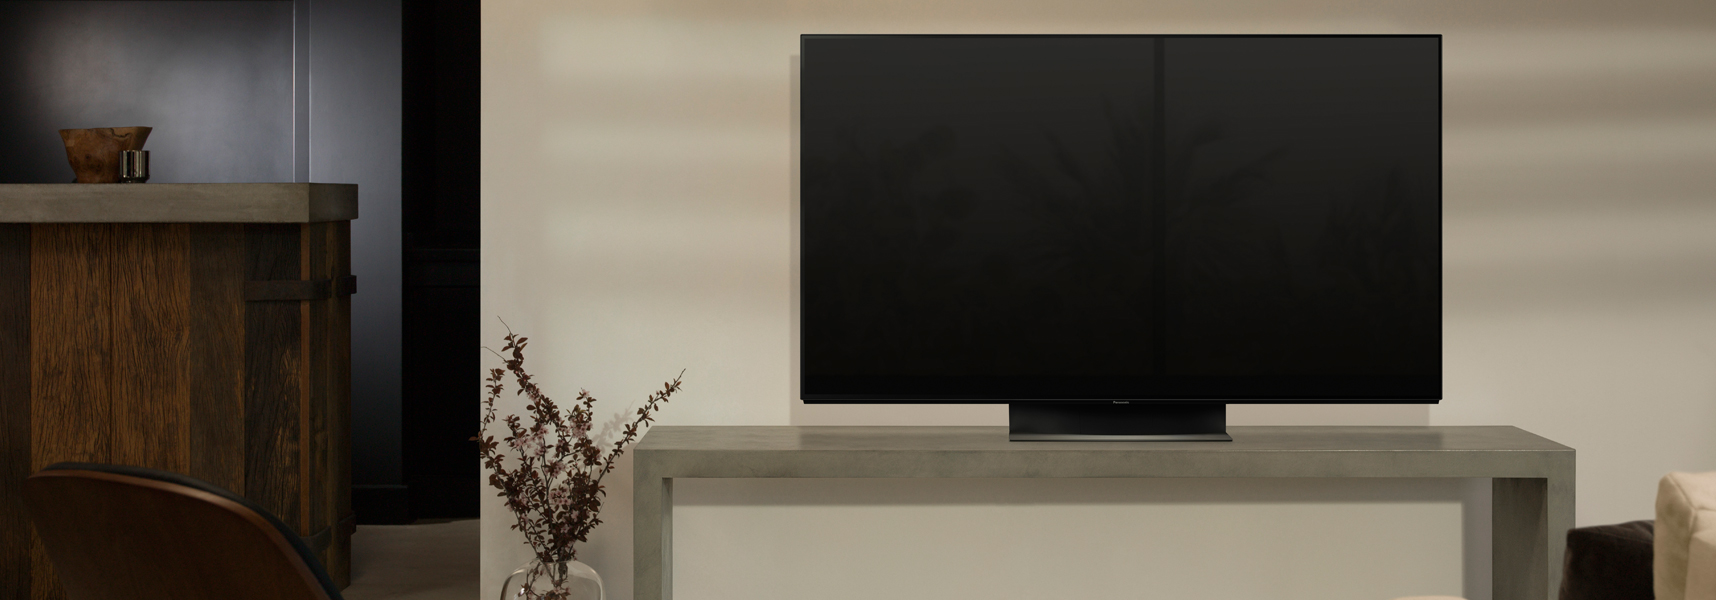 Panasonic Fernseher auf einem Fernsehtisch in einem Wohnzimmer 